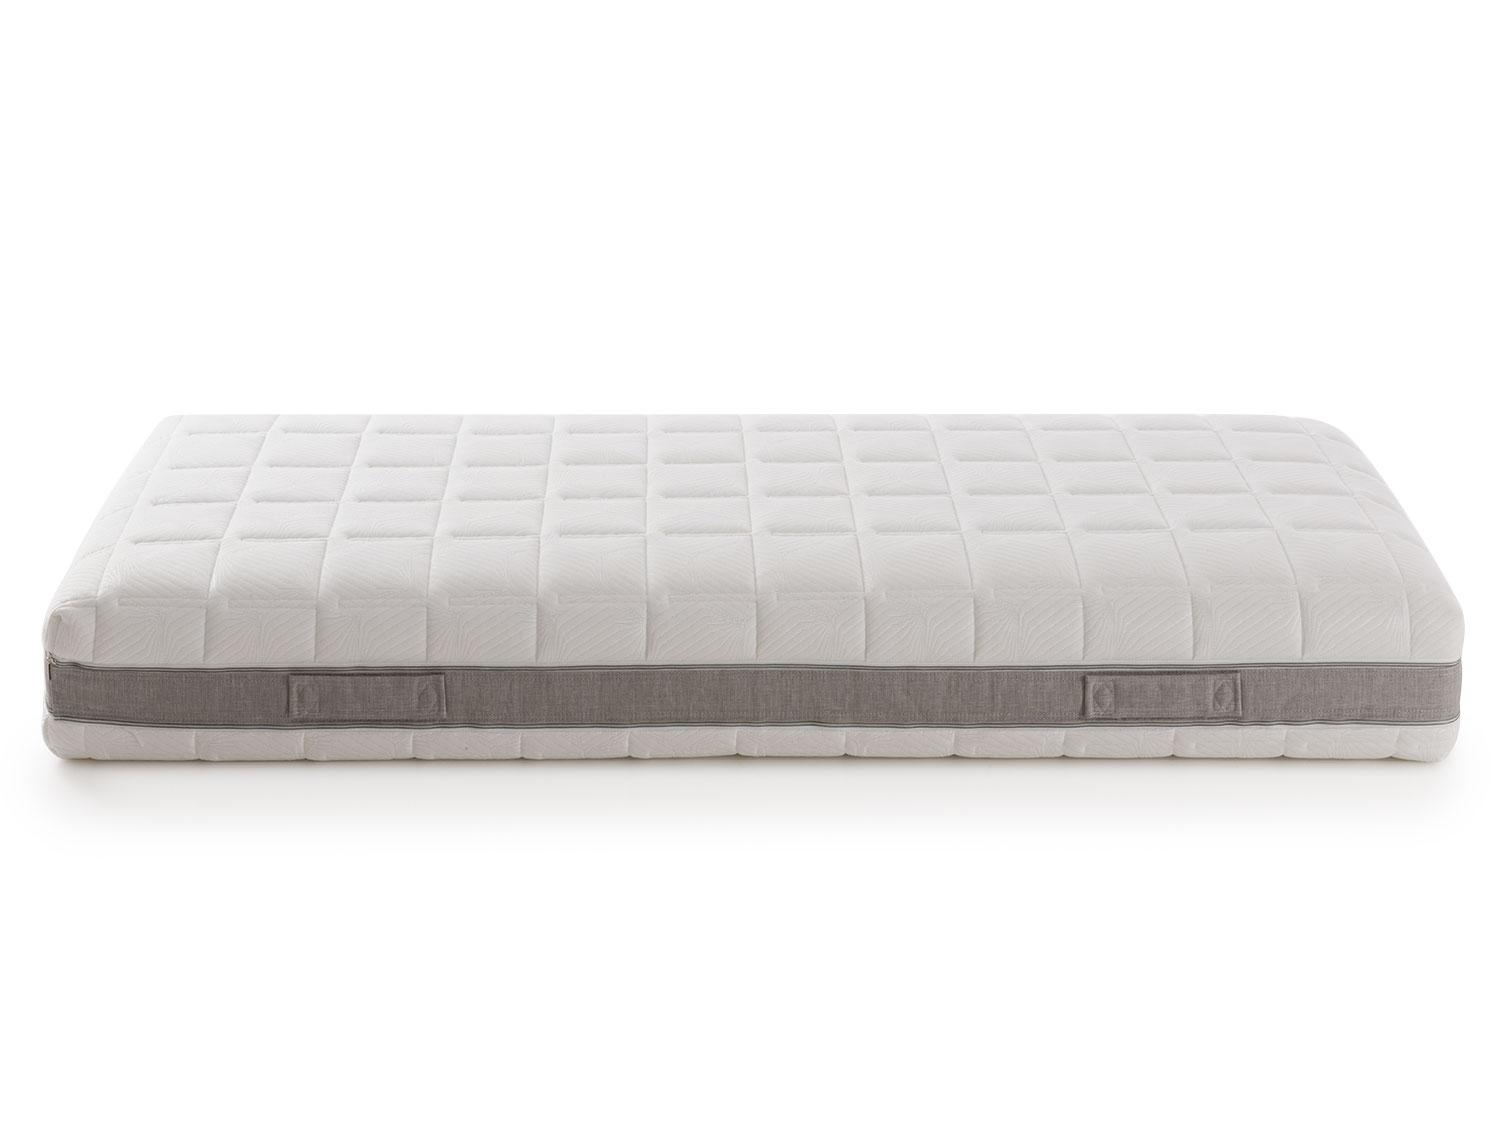 flextech memory foam mattress review